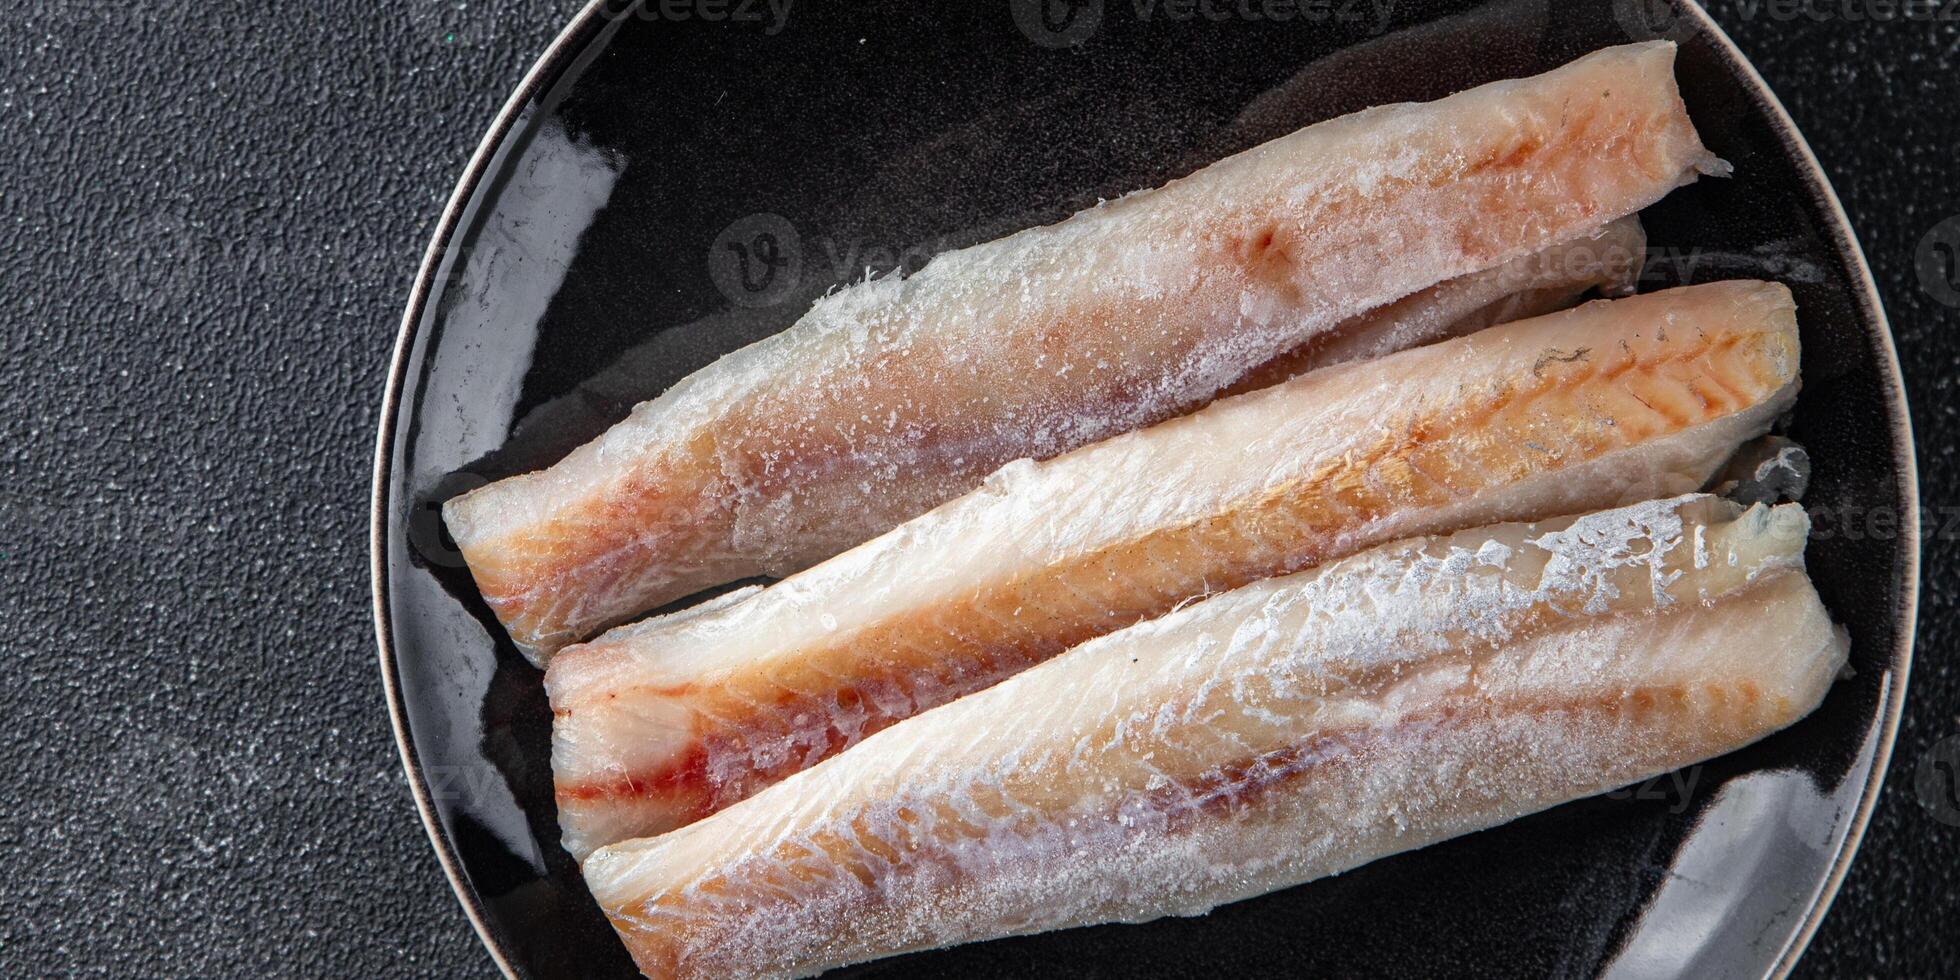 Seehecht Fisch Filet frisch Meeresfrüchte lecker gesund Essen Kochen Vorspeise Mahlzeit Essen Snack auf das Tabelle foto